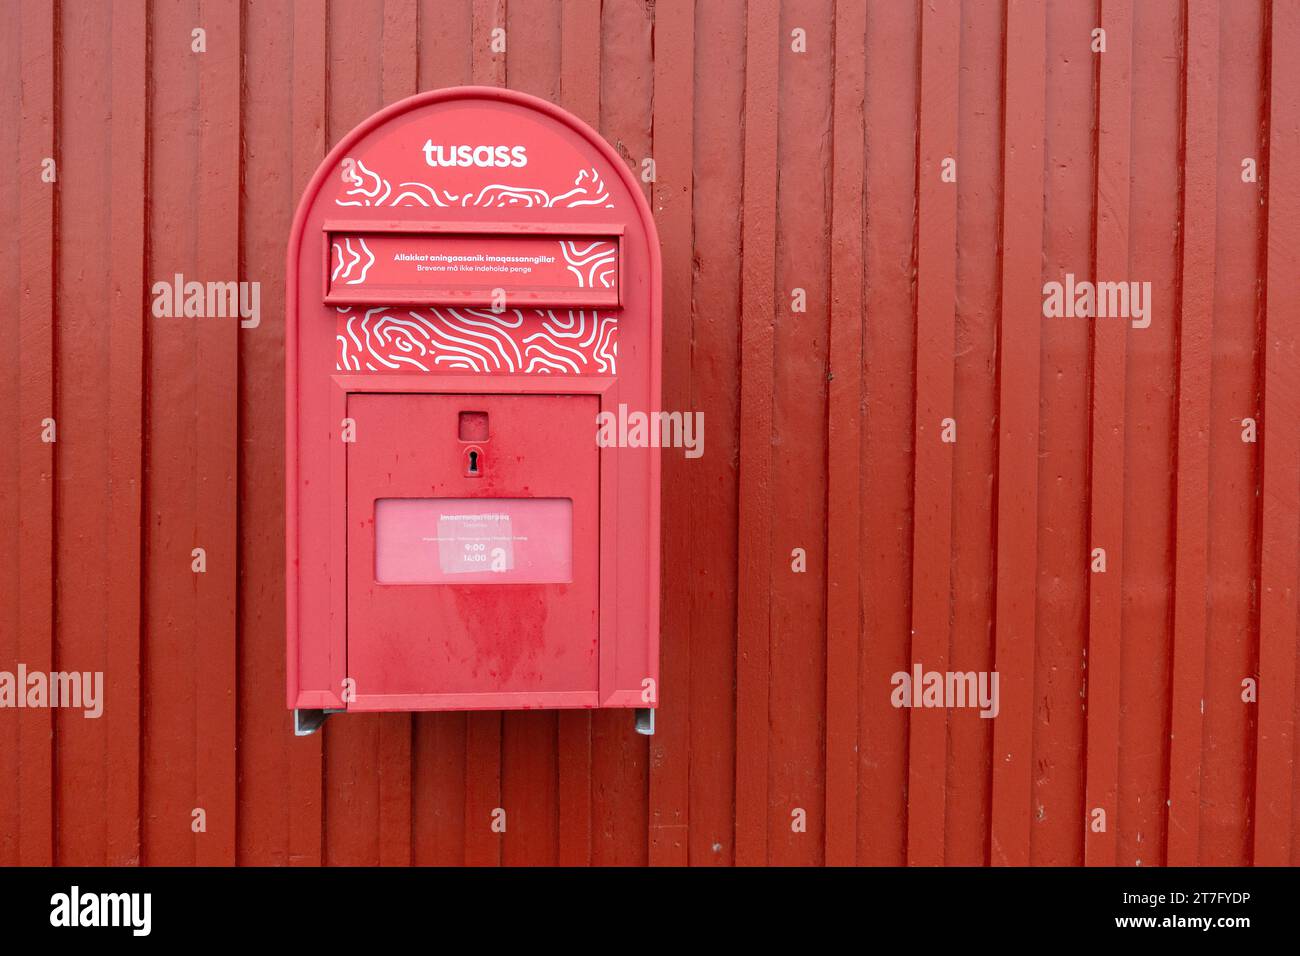 Casella postale della Letterbox della Greenland Post di Tusass, montata su parete rossa, a Nanortalik, servizio postale della Groenlandia meridionale Foto Stock